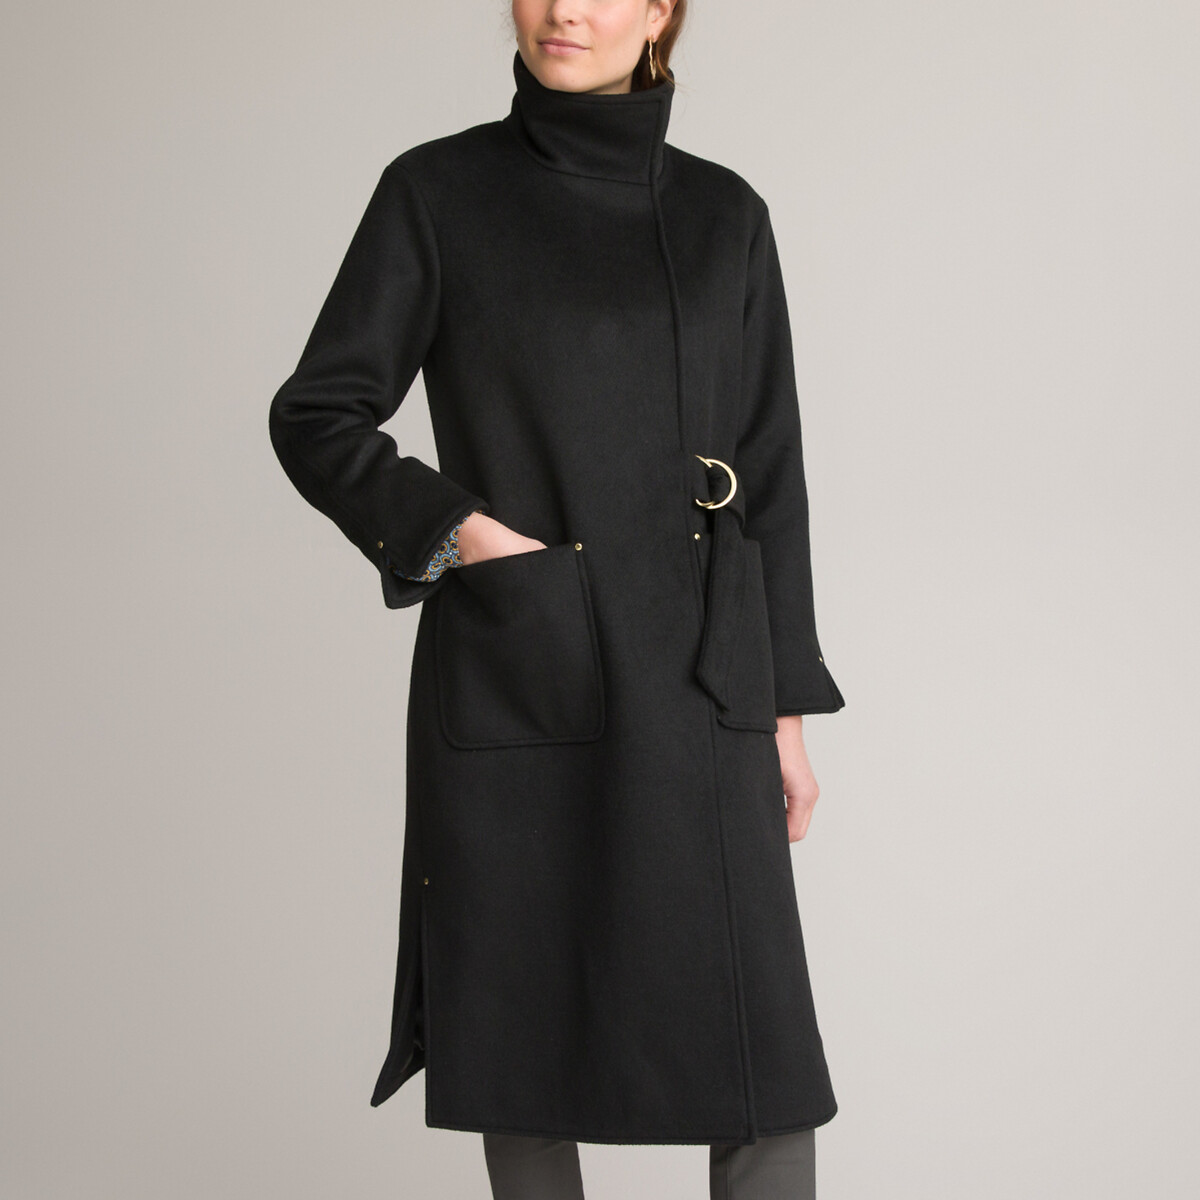 Пальто Длинное асимметричное с завязками 36 (FR) - 42 (RUS) черный LaRedoute, размер 36 (FR) - 42 (RUS) Пальто Длинное асимметричное с завязками 36 (FR) - 42 (RUS) черный - фото 1